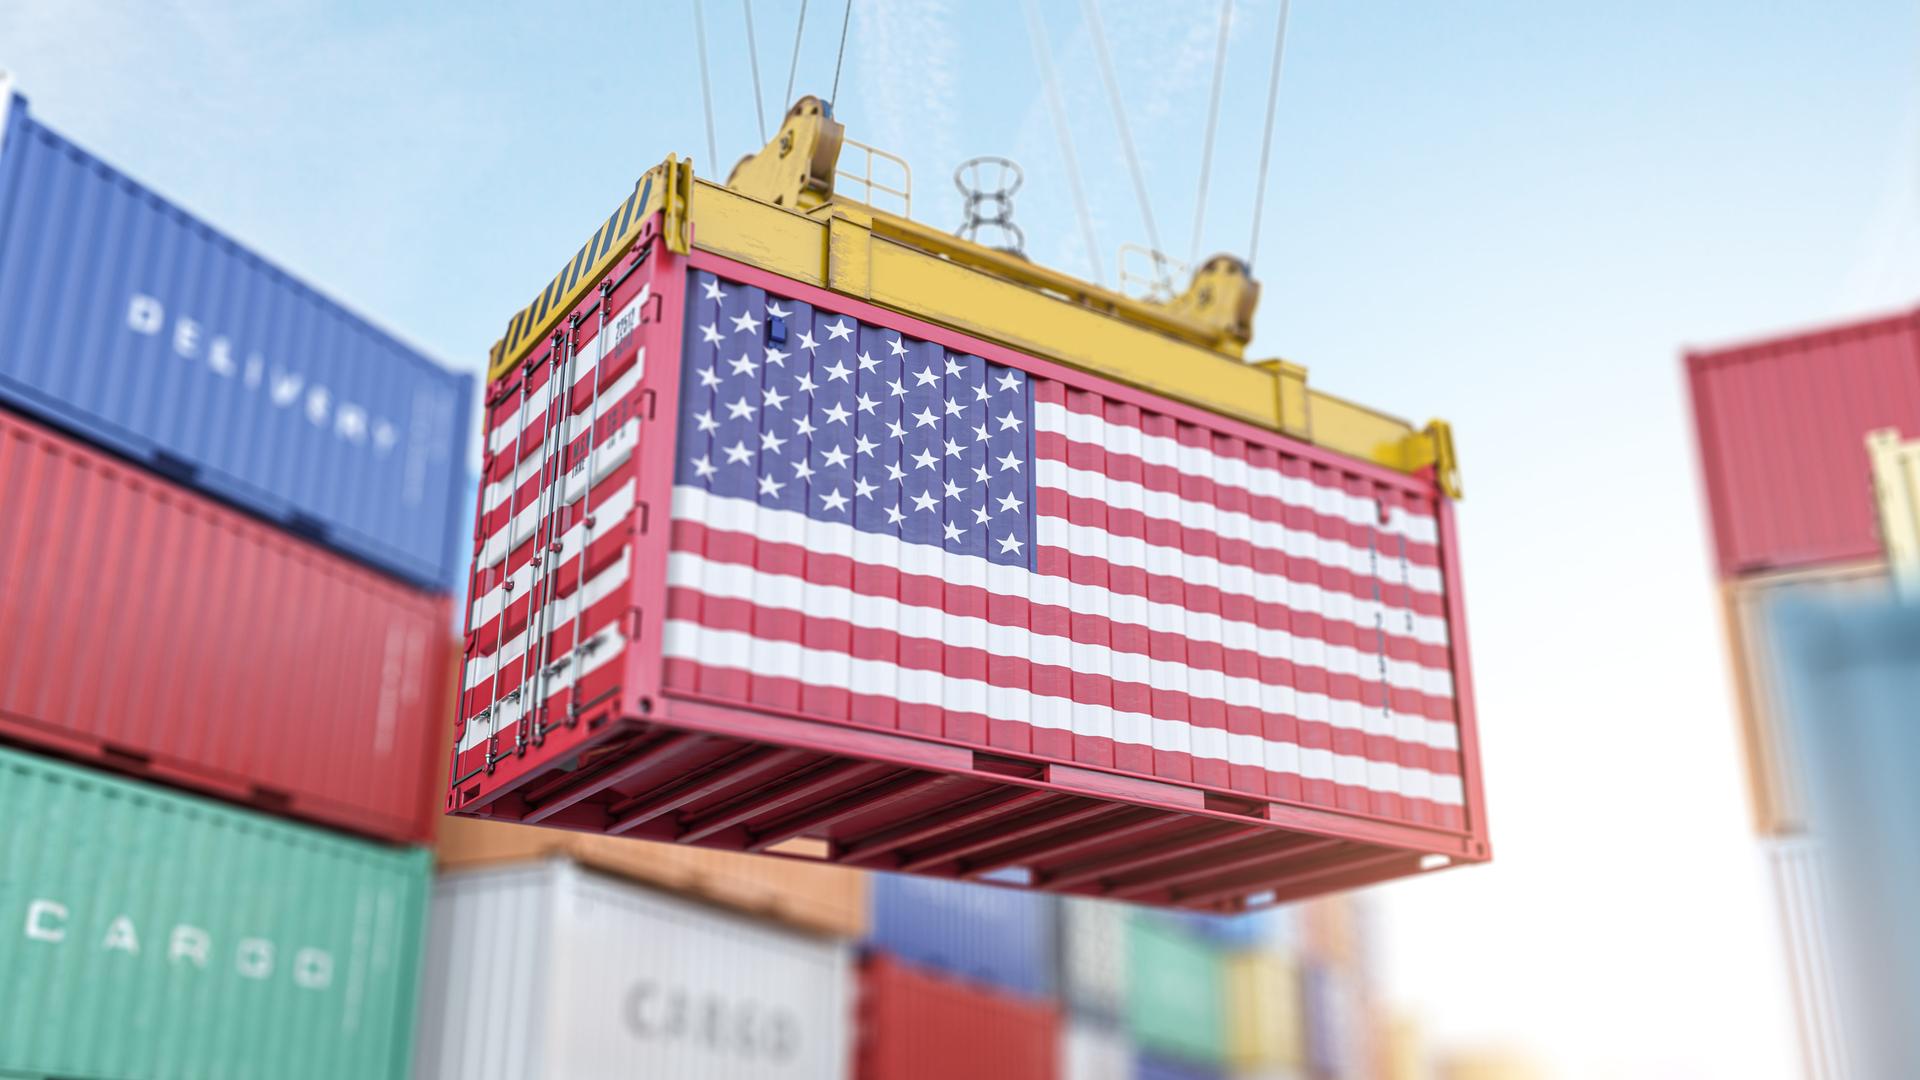 Symbolbild: Ein Frachtcontainer mit USA-Flagge in einem Hafen beim verladen.